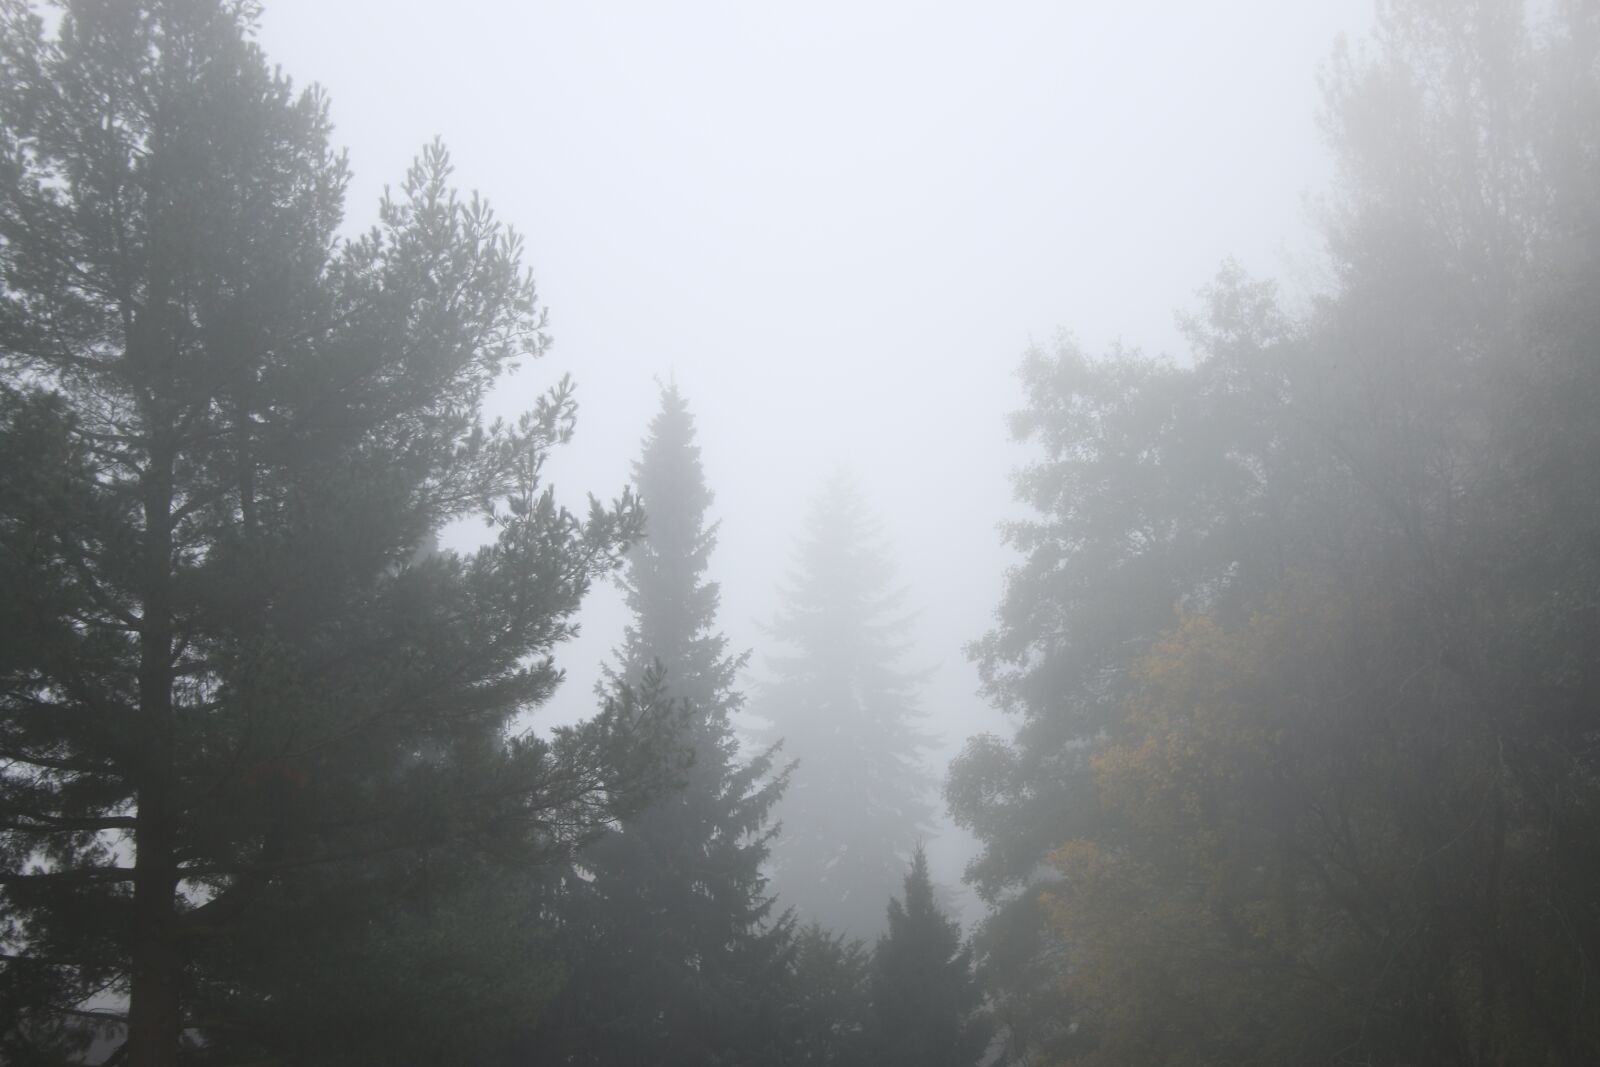 Canon EOS 70D sample photo. Fog, mist, forest photography